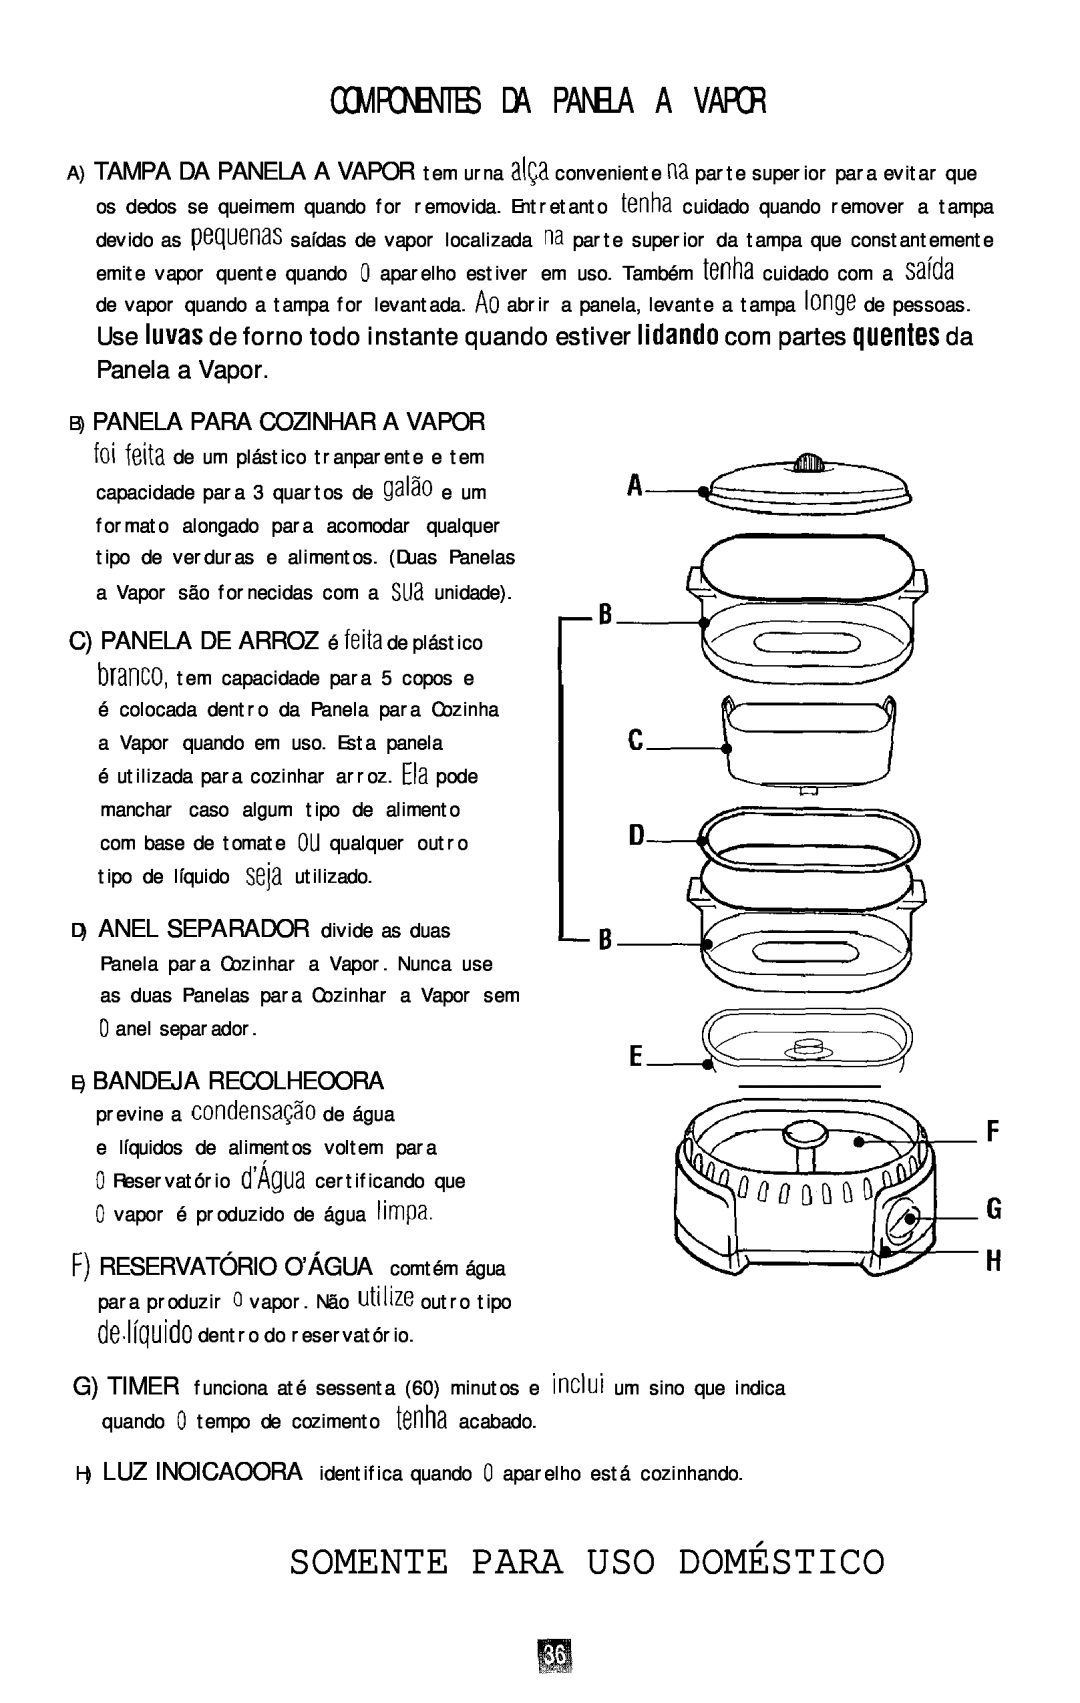 Oster 4711 manual Somente Para Uso Doméstico, Componentes Da Panela A Vapor, C PANELA DE ARROZ é feita de plástico 